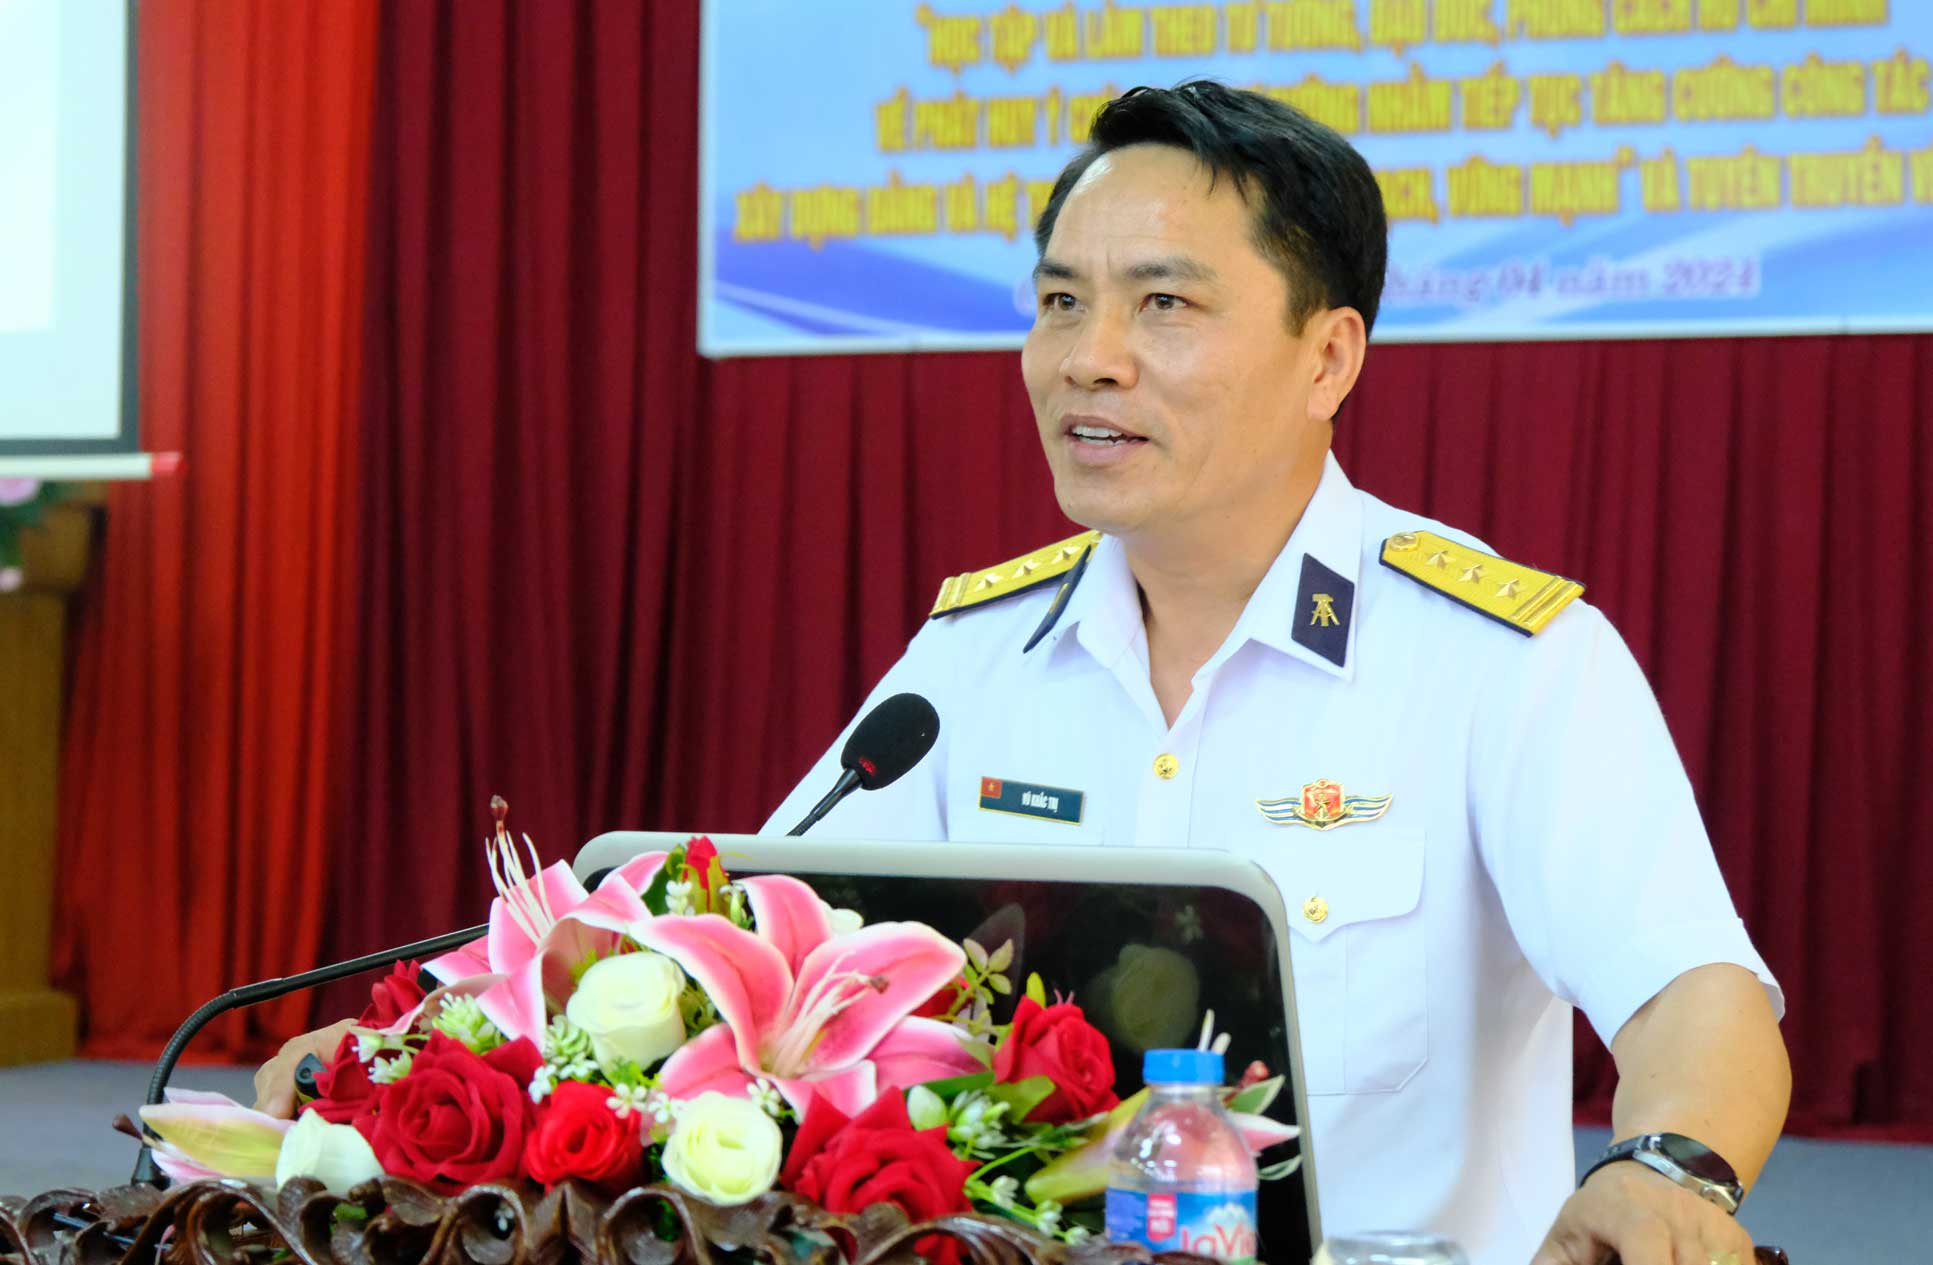 Chủ nhiệm chính trị nhà máy X55 Cục kỹ thuật Quân chủng Hải quân Vũ Khắc Trị thông tin các vấn đề liên quan đến biển, đảo Việt Nam. Ảnh: Mỹ Ly